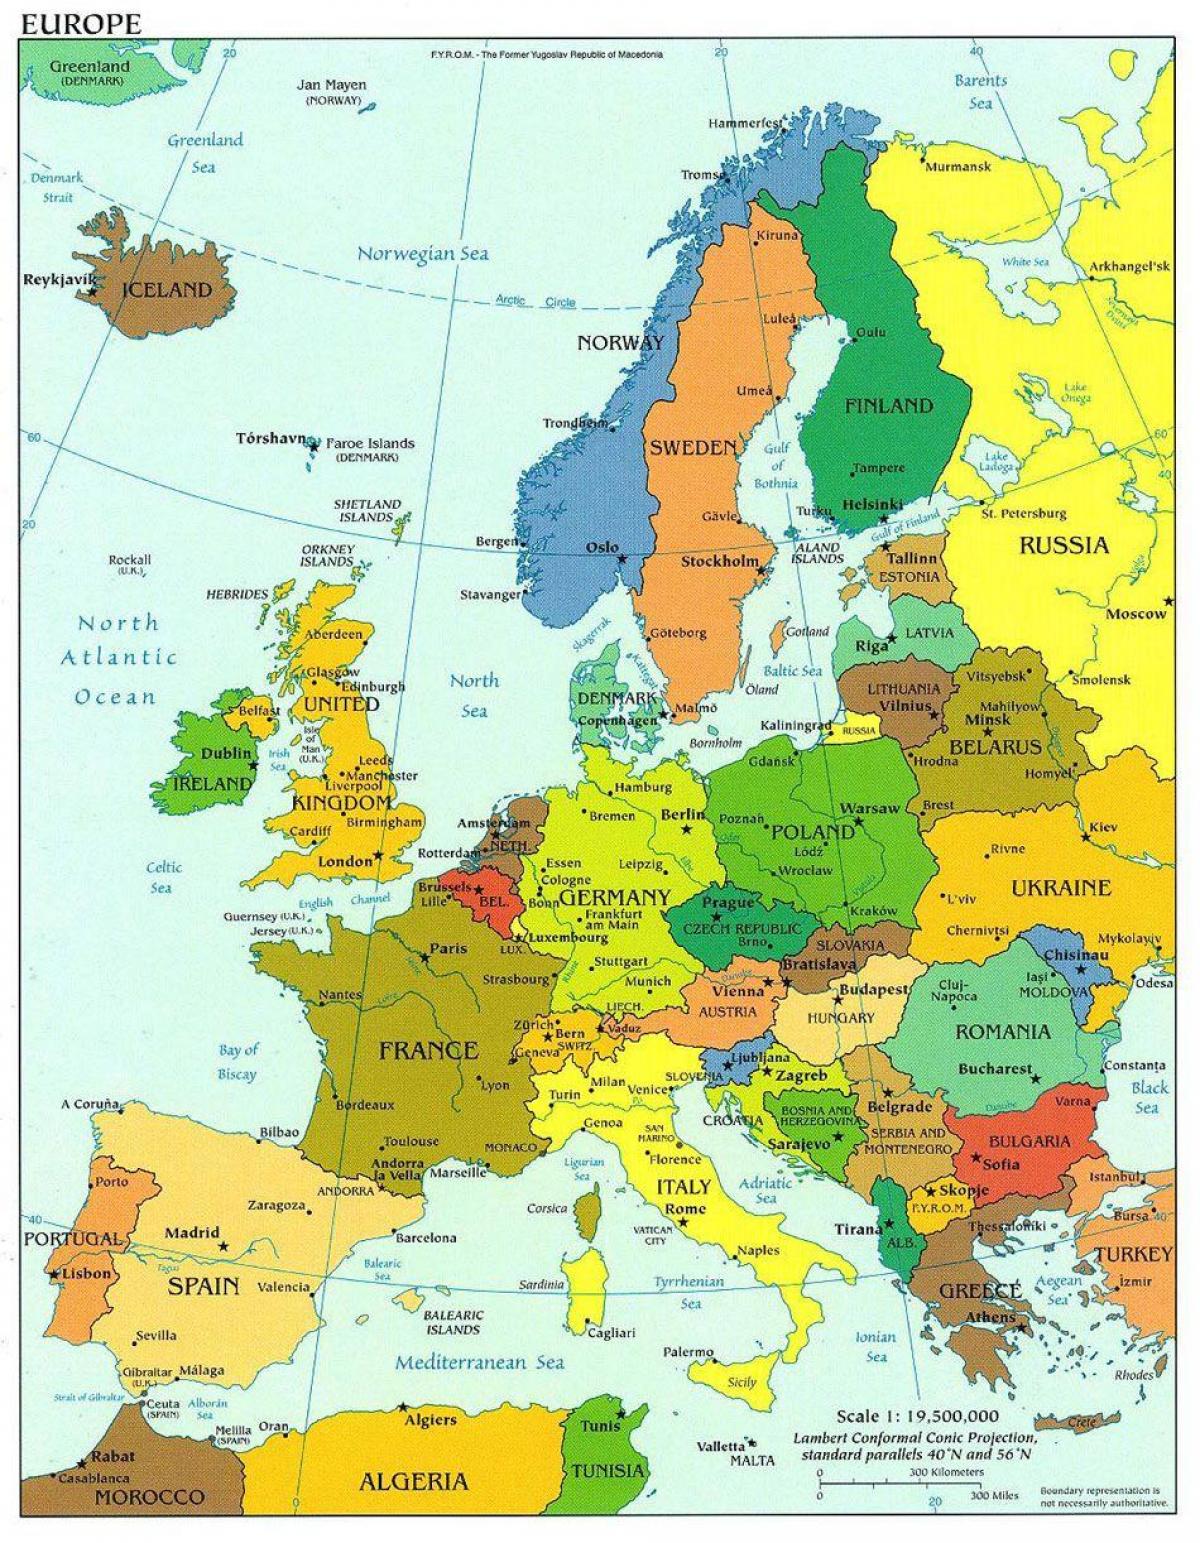 kart over europa som viser danmark